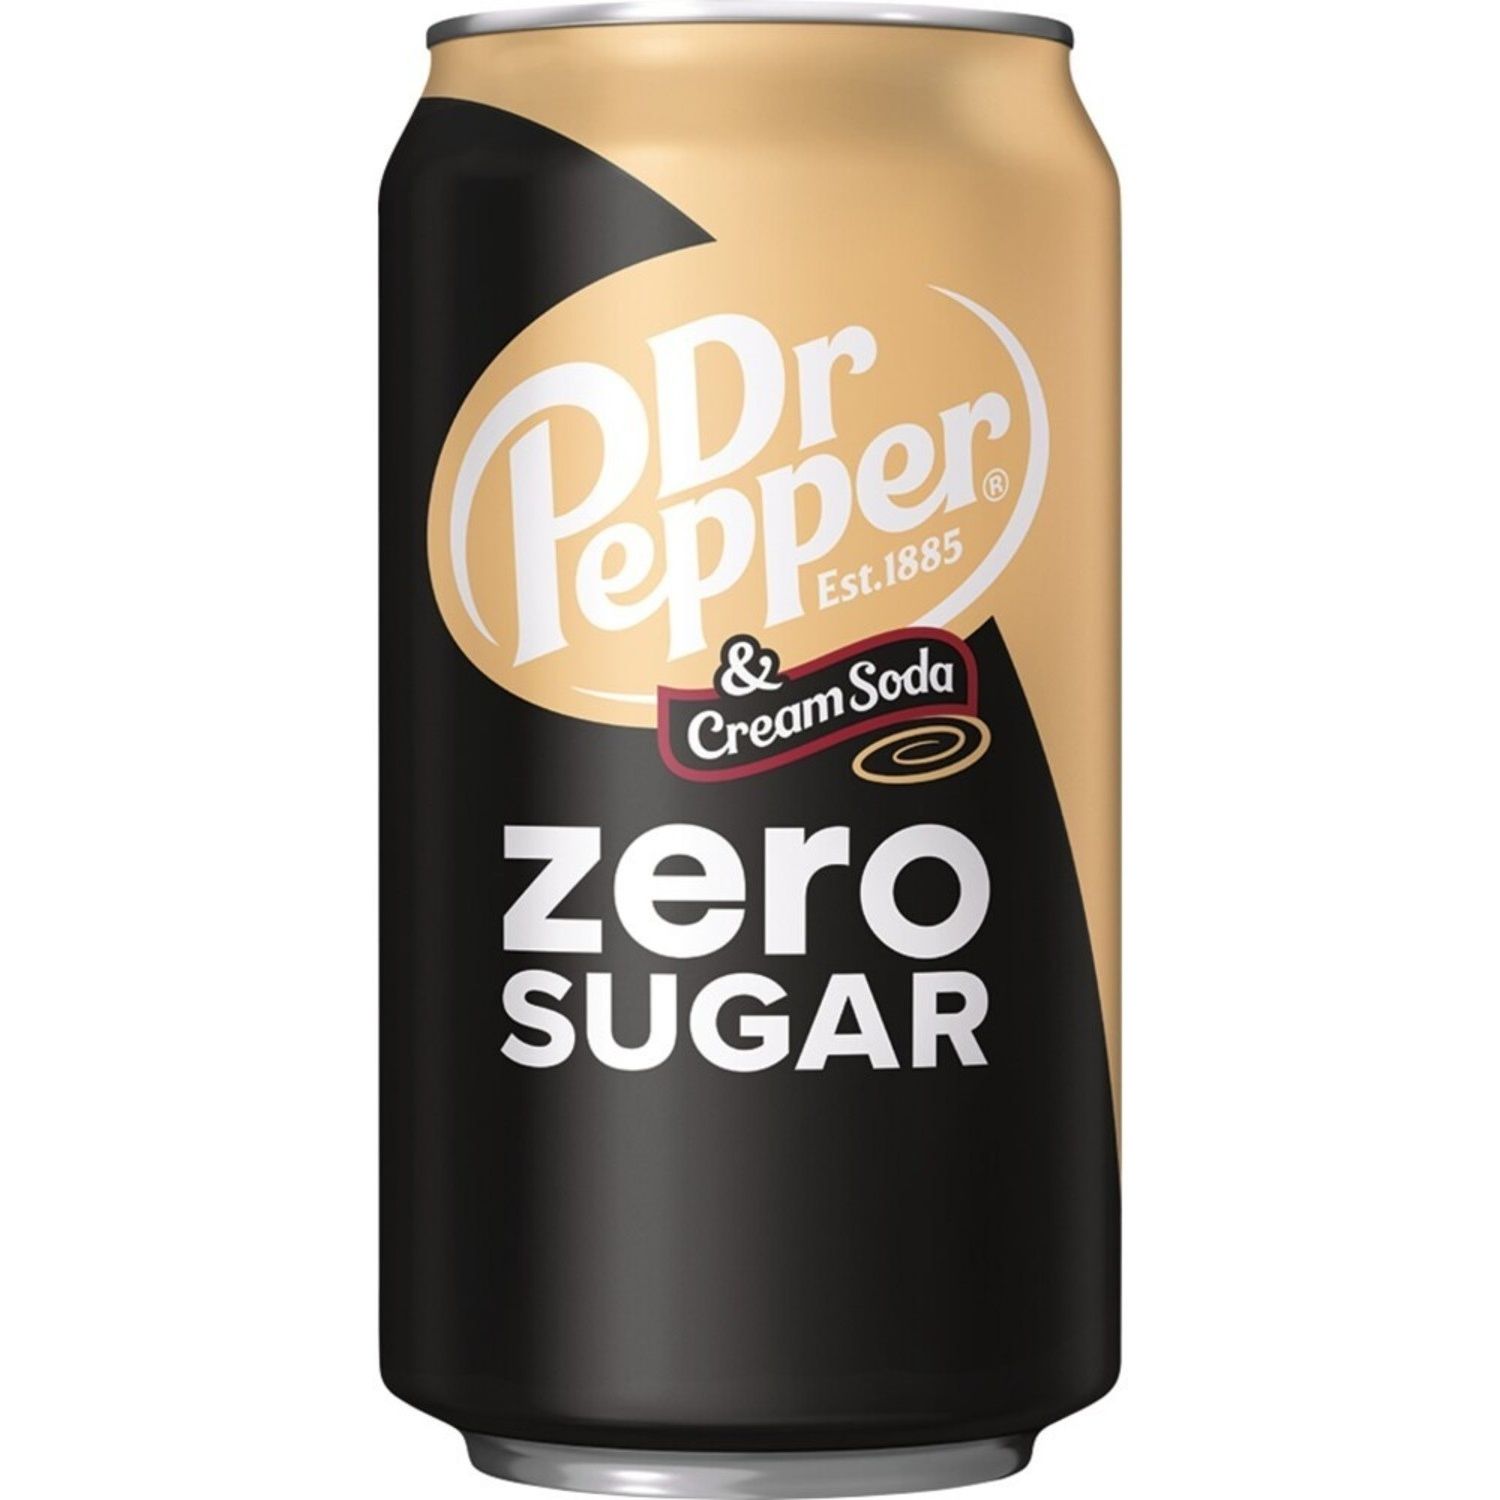 Напиток безалкогольный Dr. Pepper Cream Soda Zero сильногазированный 0.355 л ж/б (951550) - фото 1